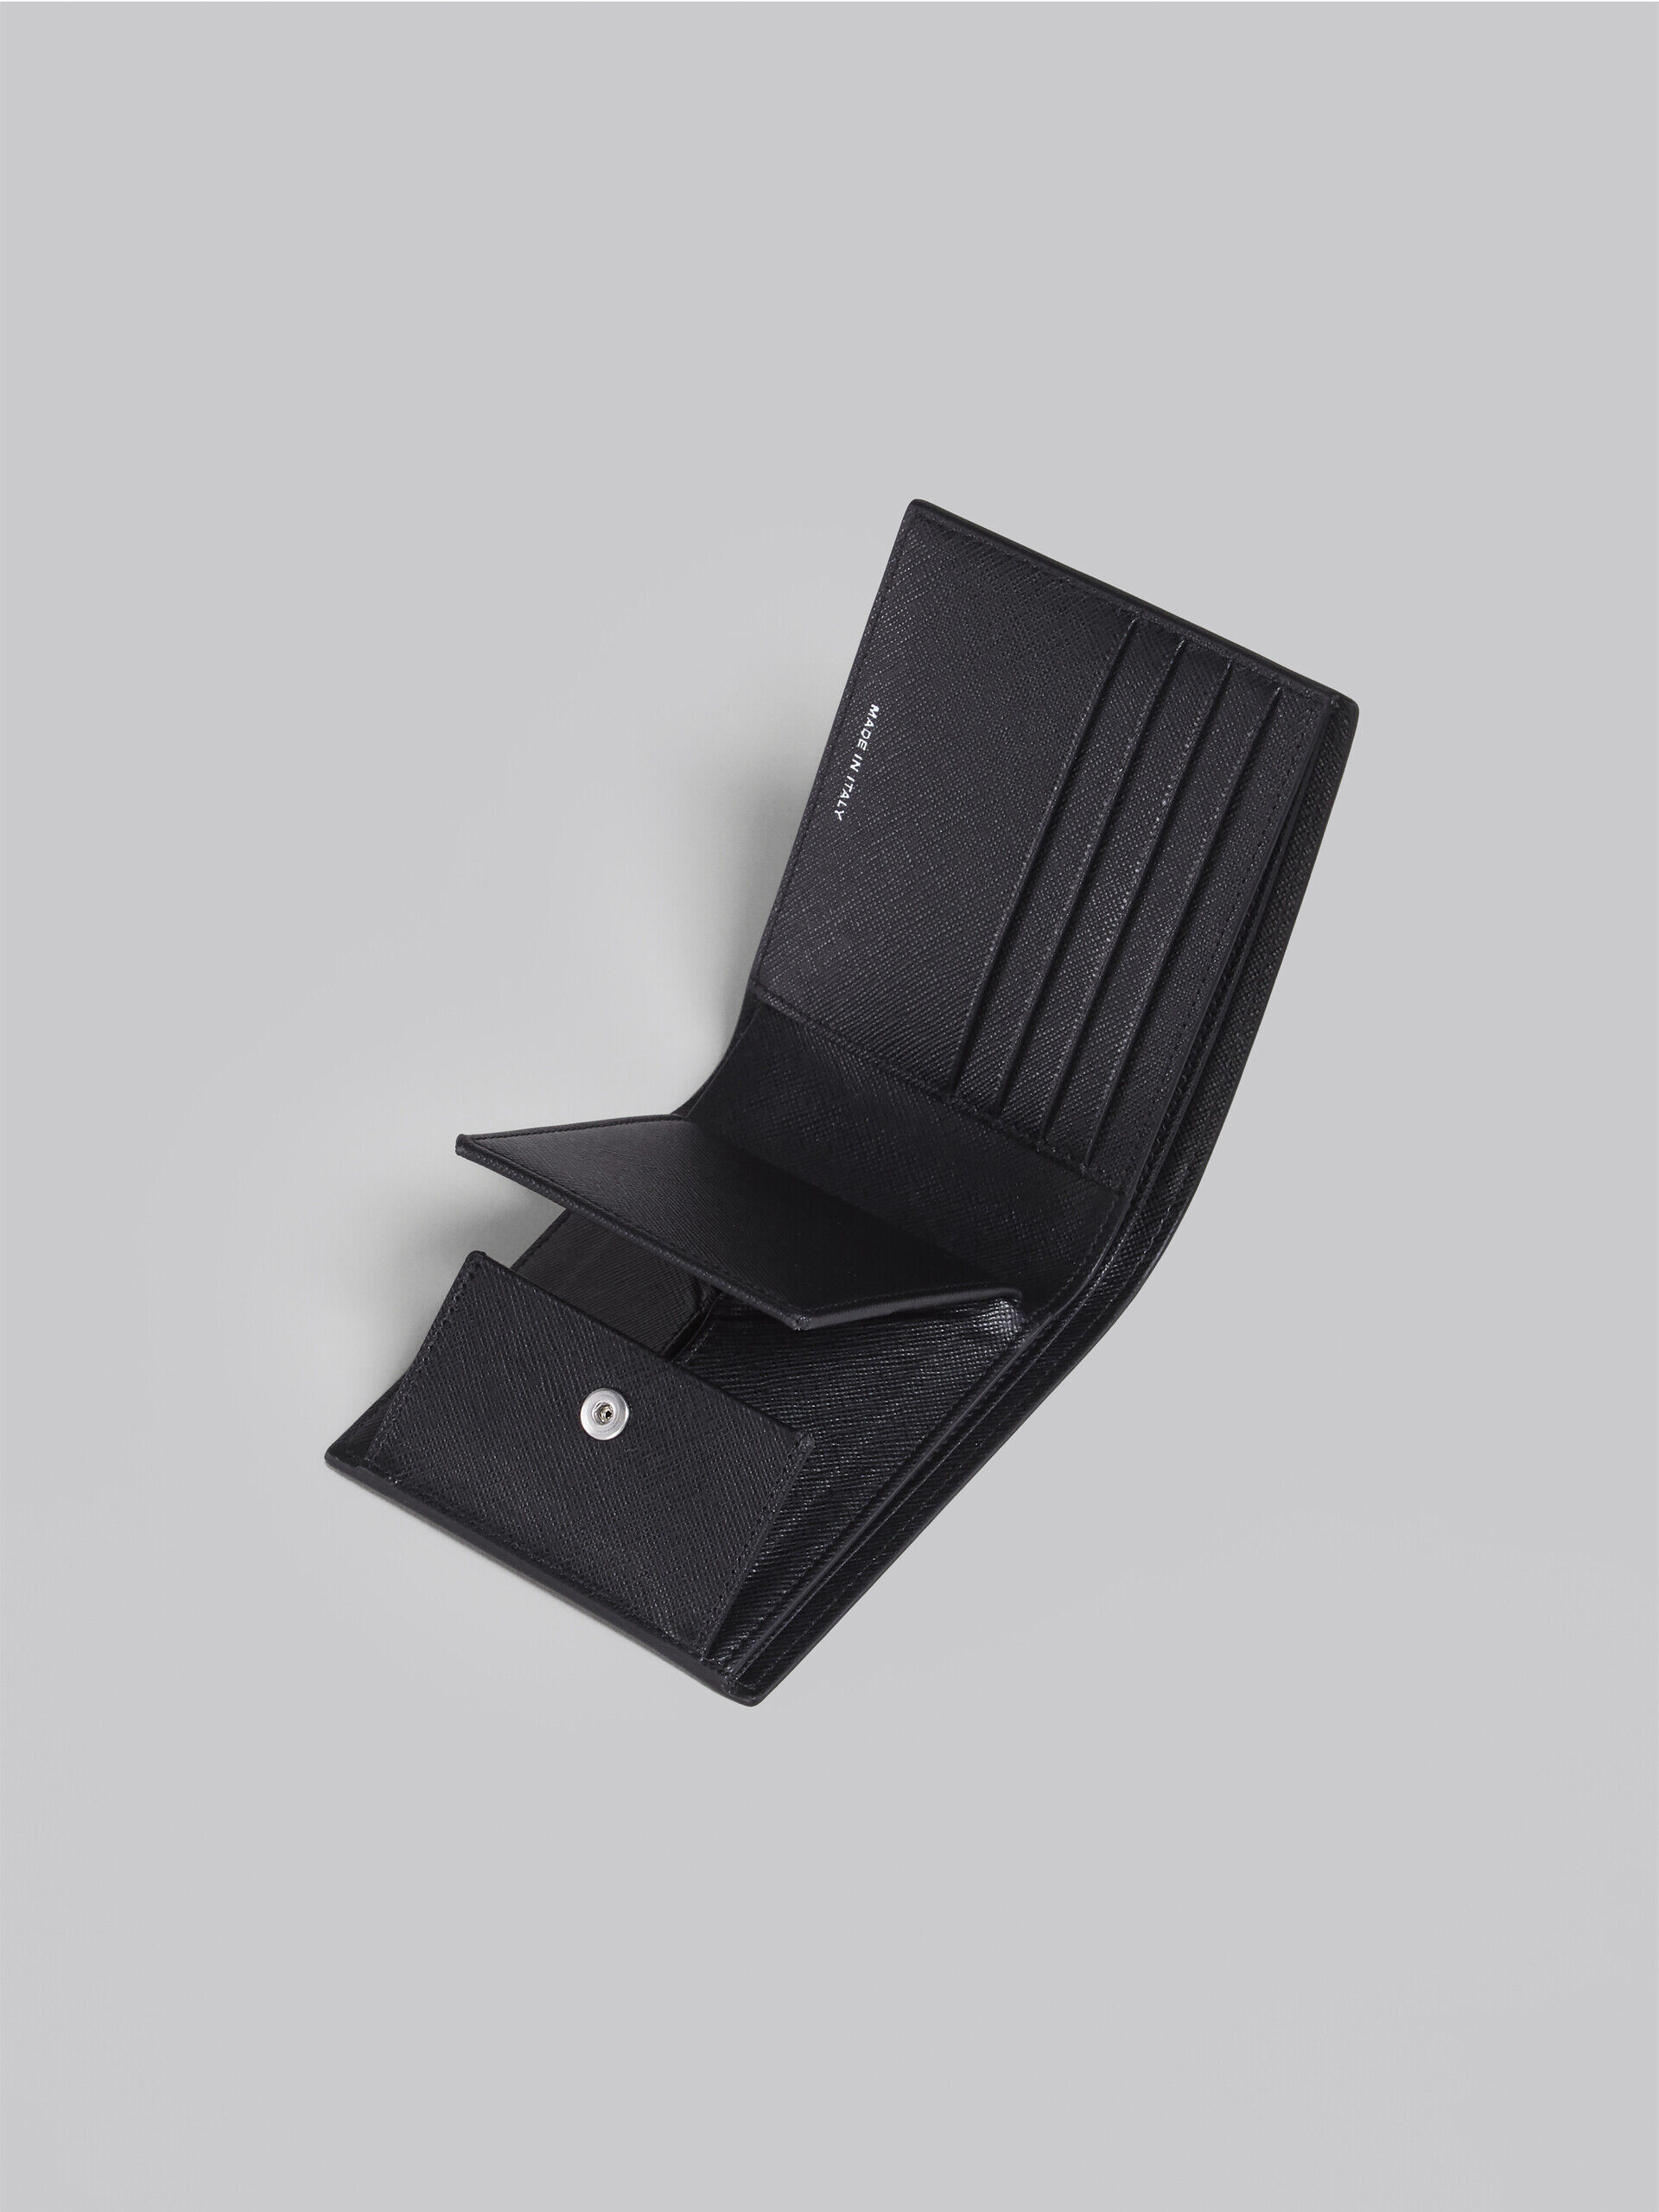 新品MARNI マルニ サフィアーノカーフレザー製 二つ折り財布 BLACK 